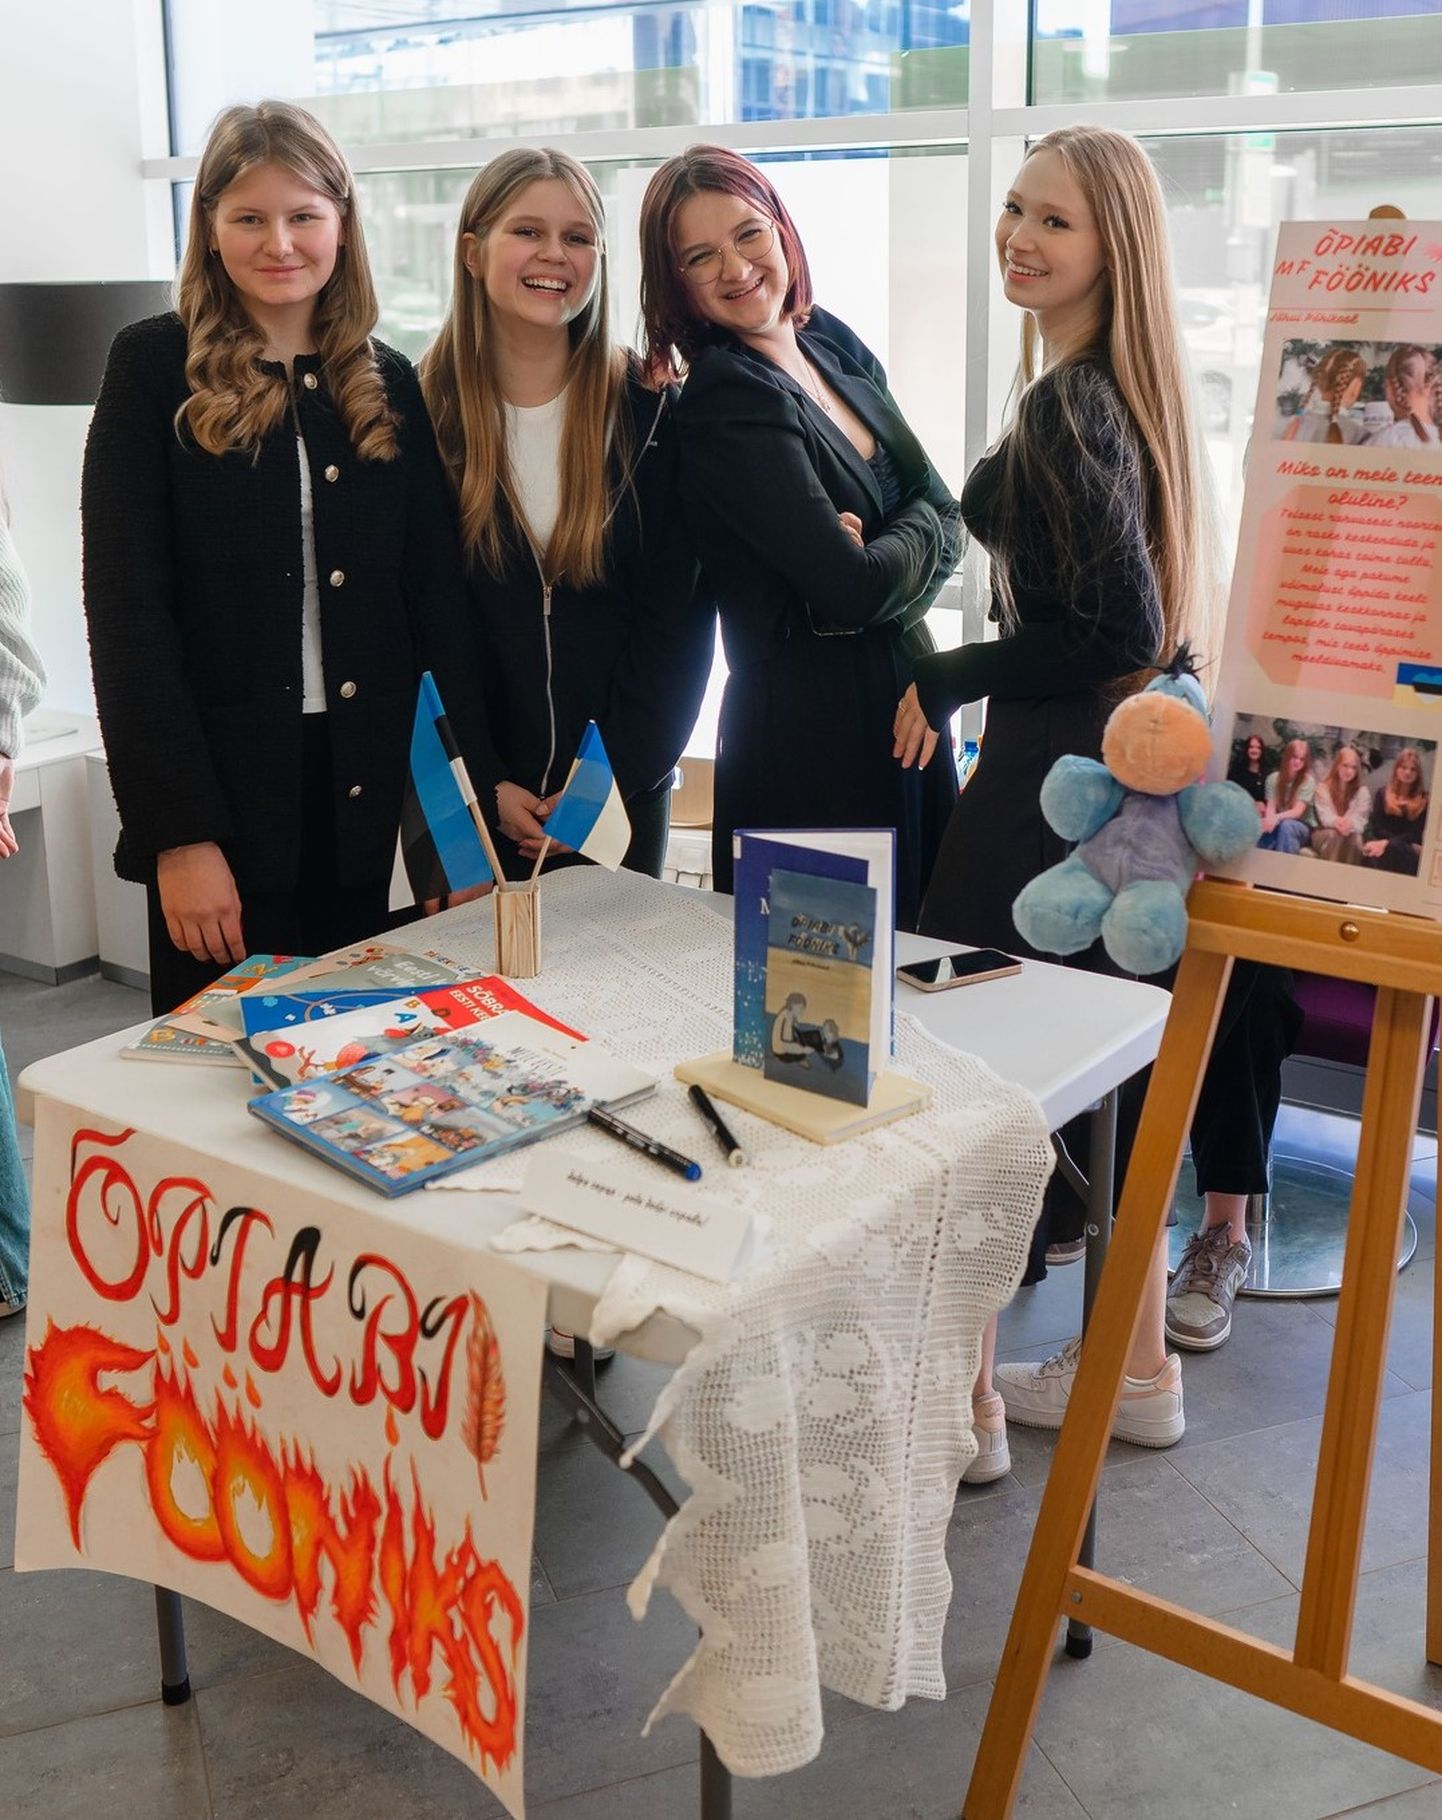 В мини-фирму "Õpiabi Fööniks" входят ученики девятого класса Йыхвиской основной школы Миртель Кыуэ Гамзеев, Мариэль Паас, Алин Хиндреус и Дарья Никитина.